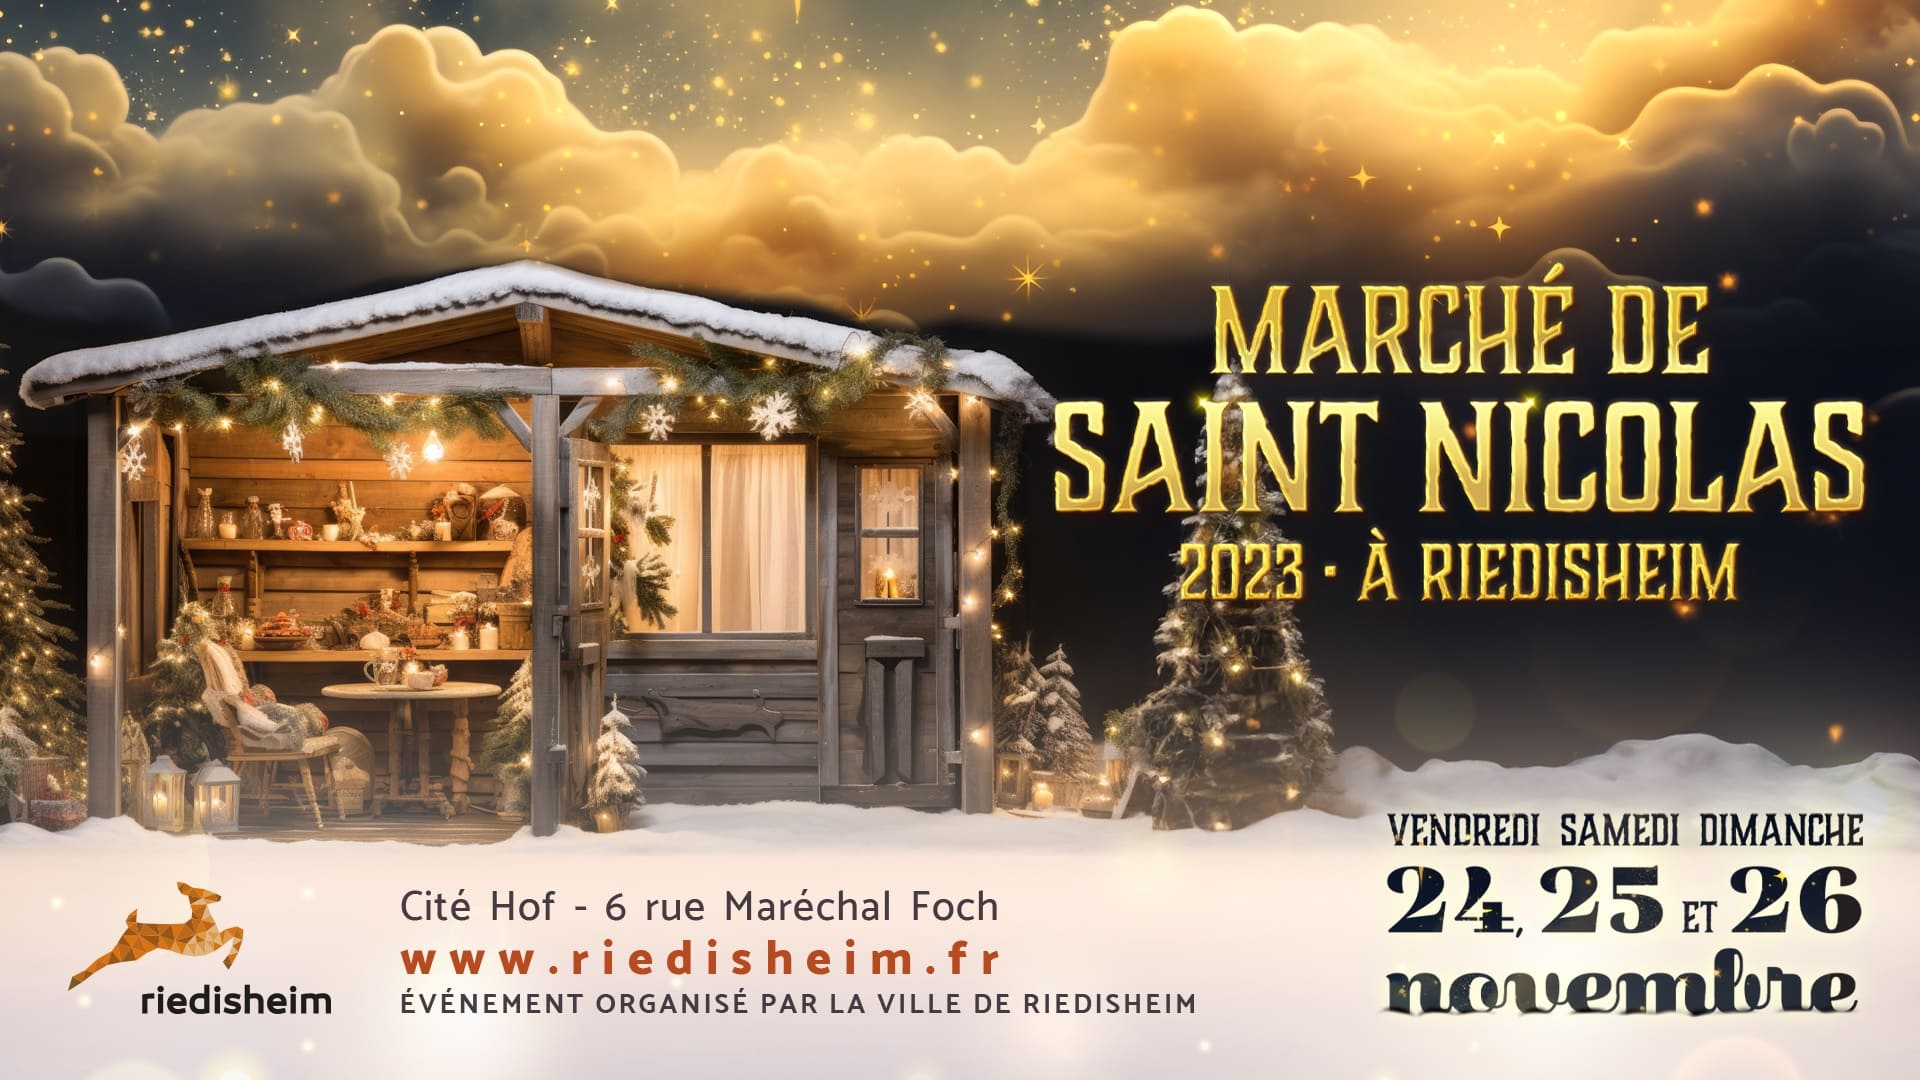 Affiche du Marché de Noël de Riedisheim